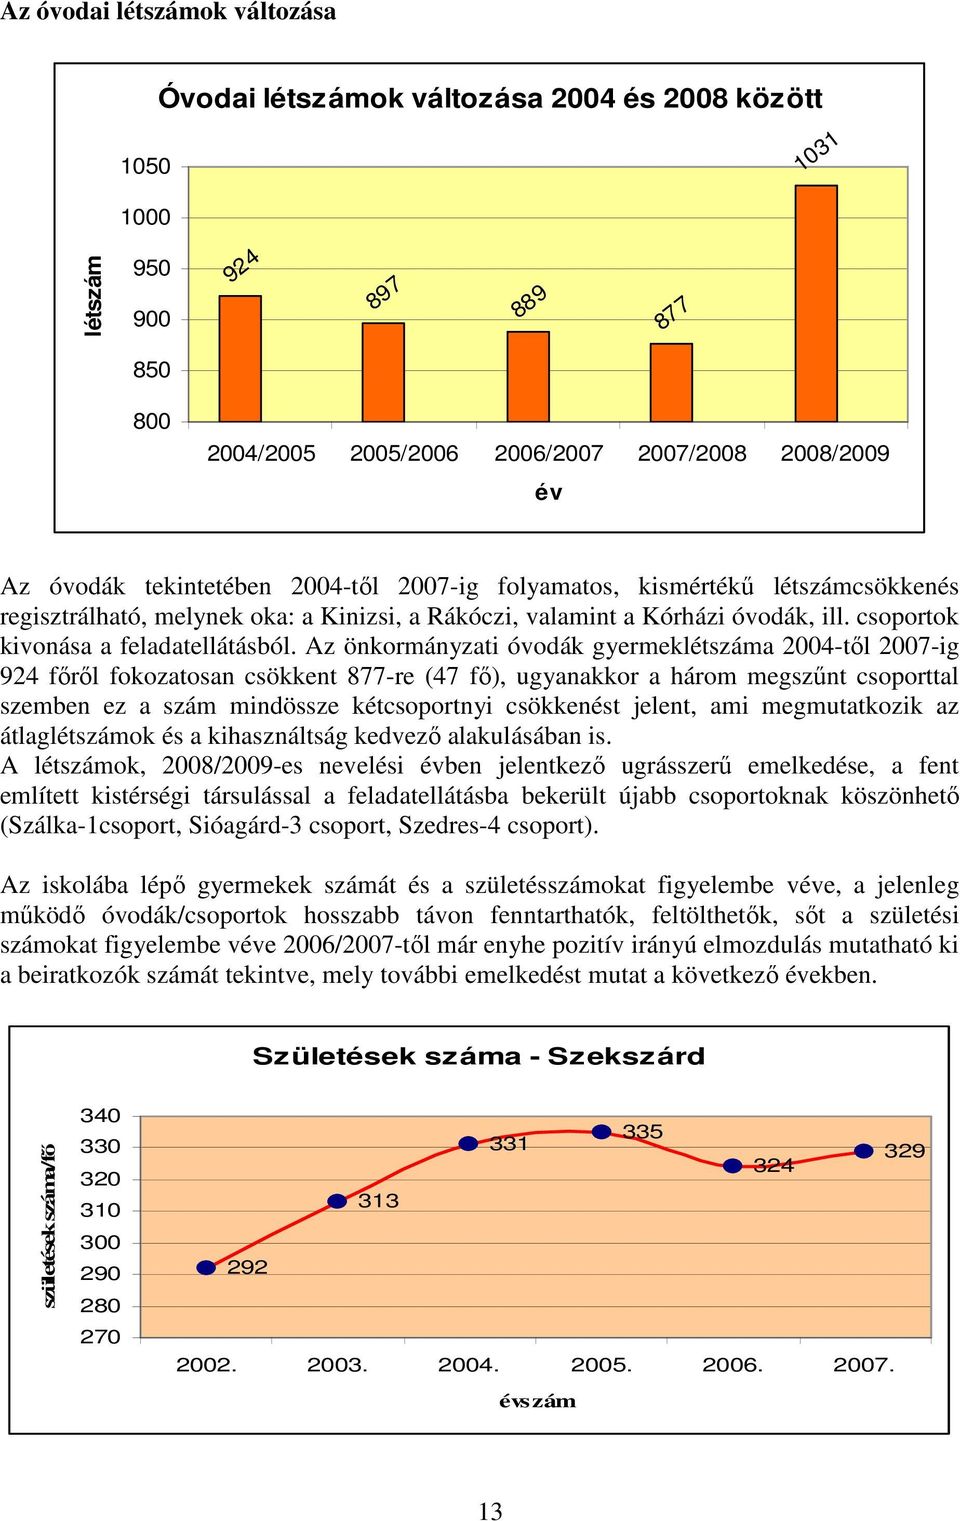 Az önkormányzati óvodák gyermeklétszáma 2004-tıl 2007-ig 924 fırıl fokozatosan csökkent 877-re (47 fı), ugyanakkor a három megszőnt csoporttal szemben ez a szám mindössze kétcsoportnyi csökkenést